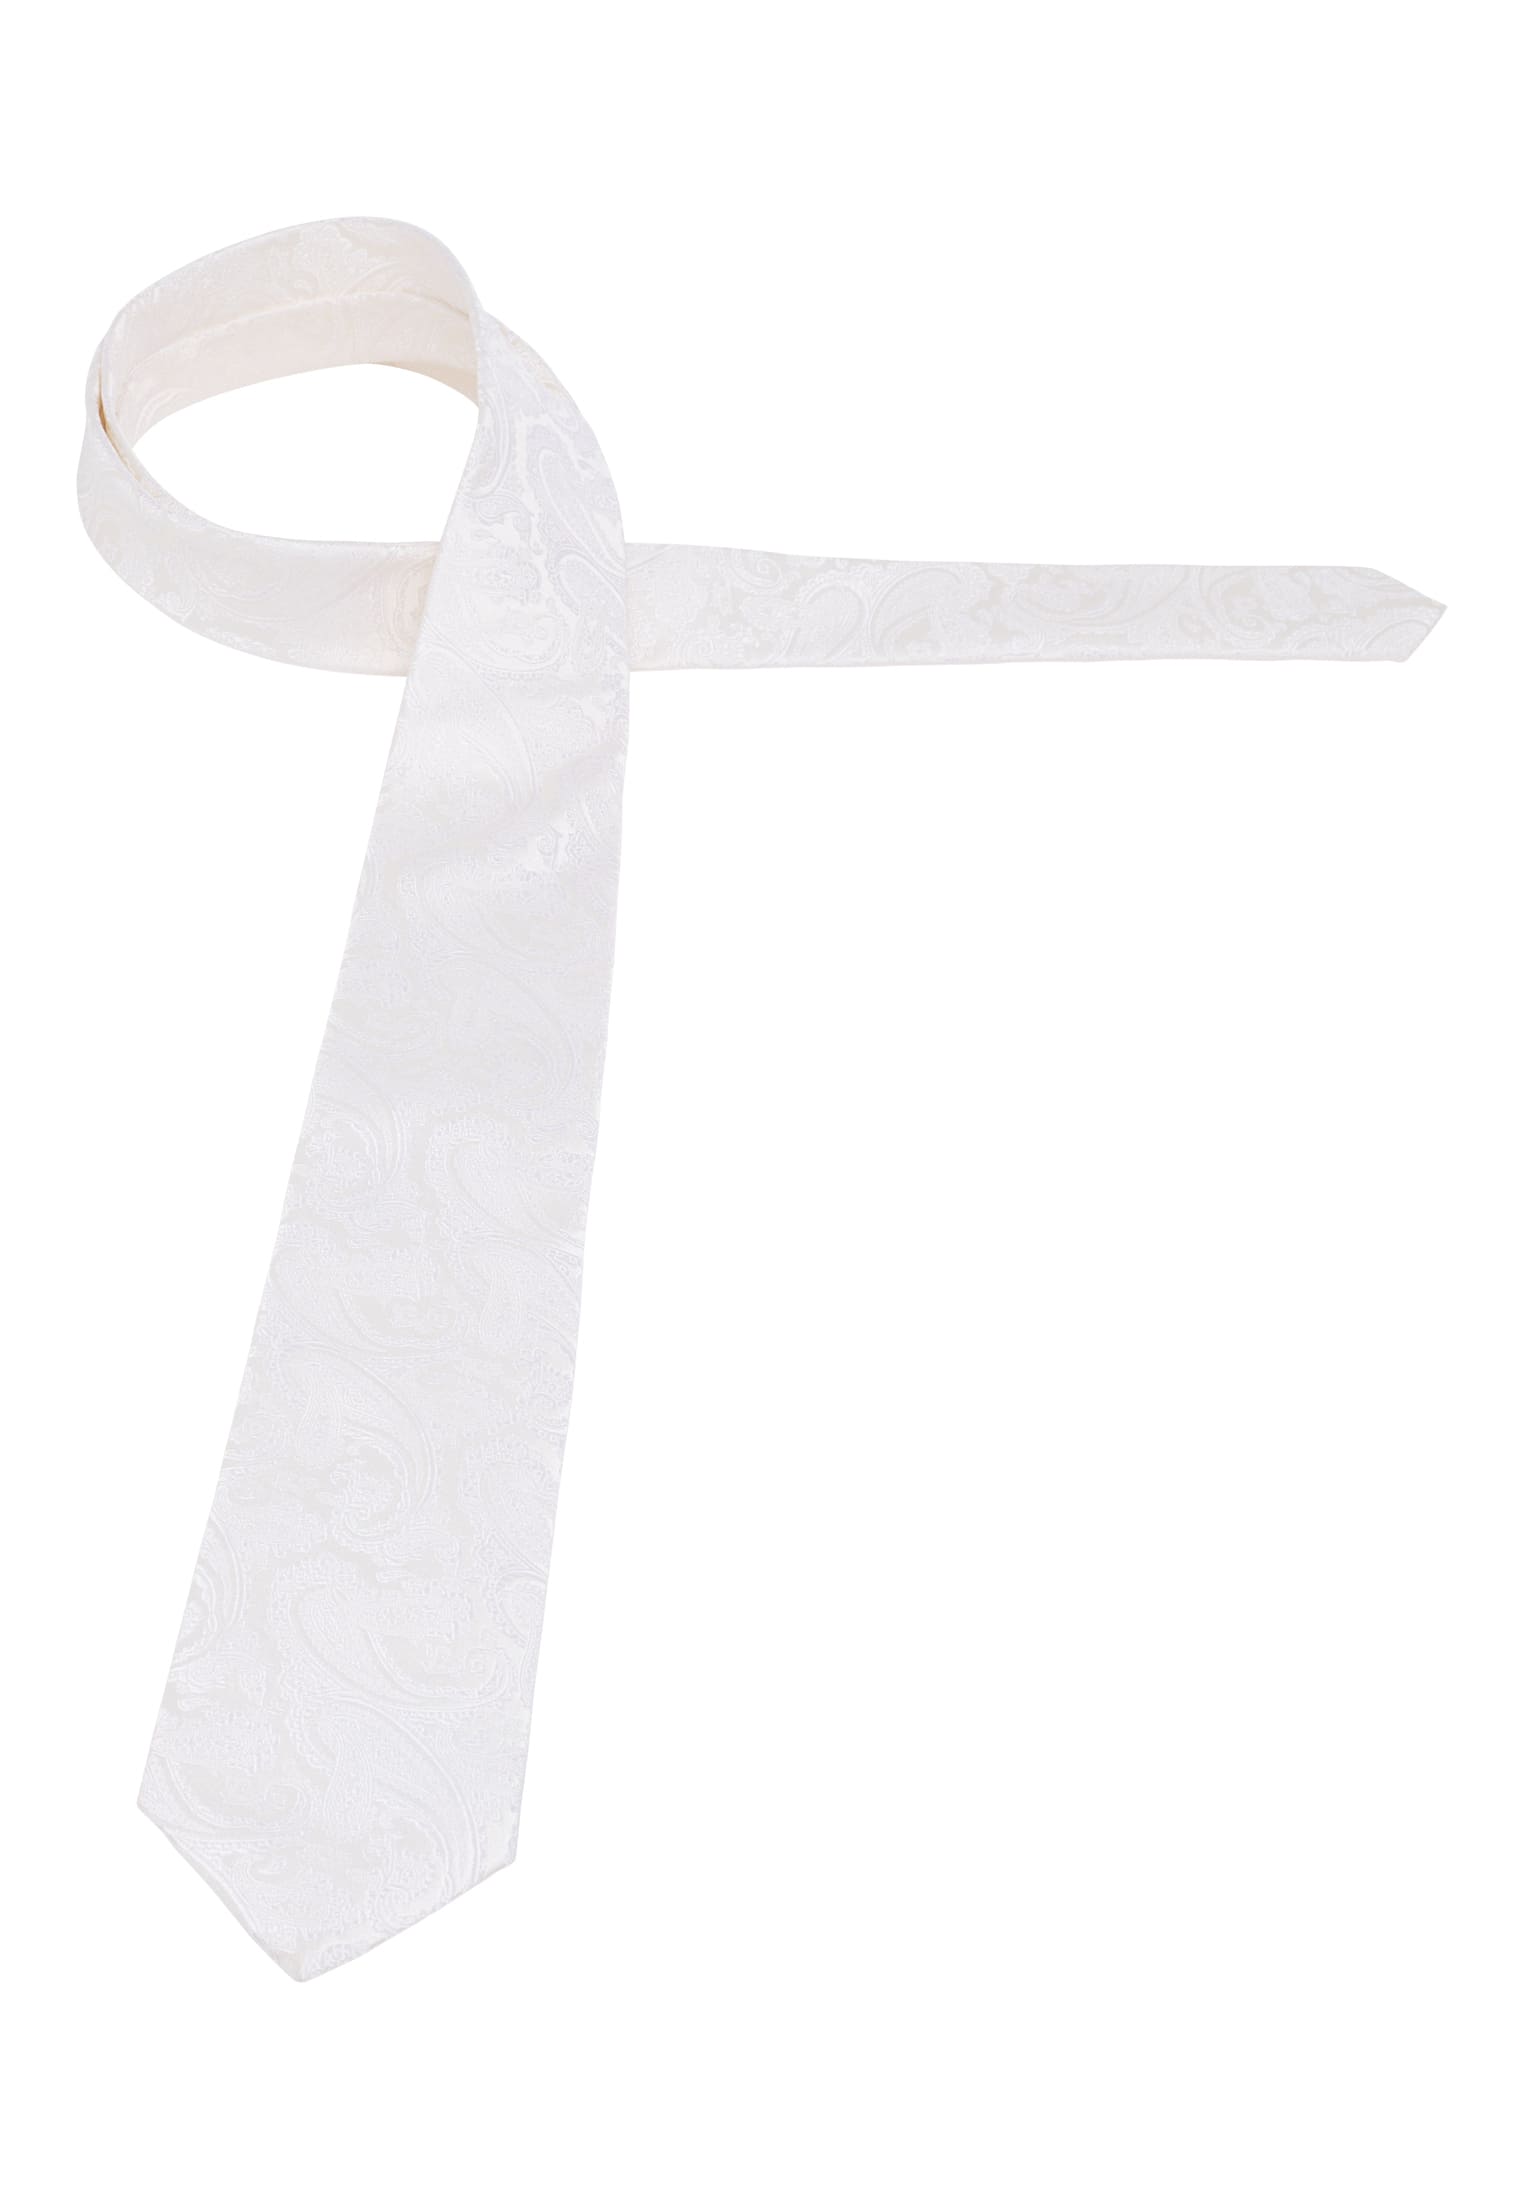 Krawatte in weiß gemustert | weiß | 142 | 1AC01984-00-01-142